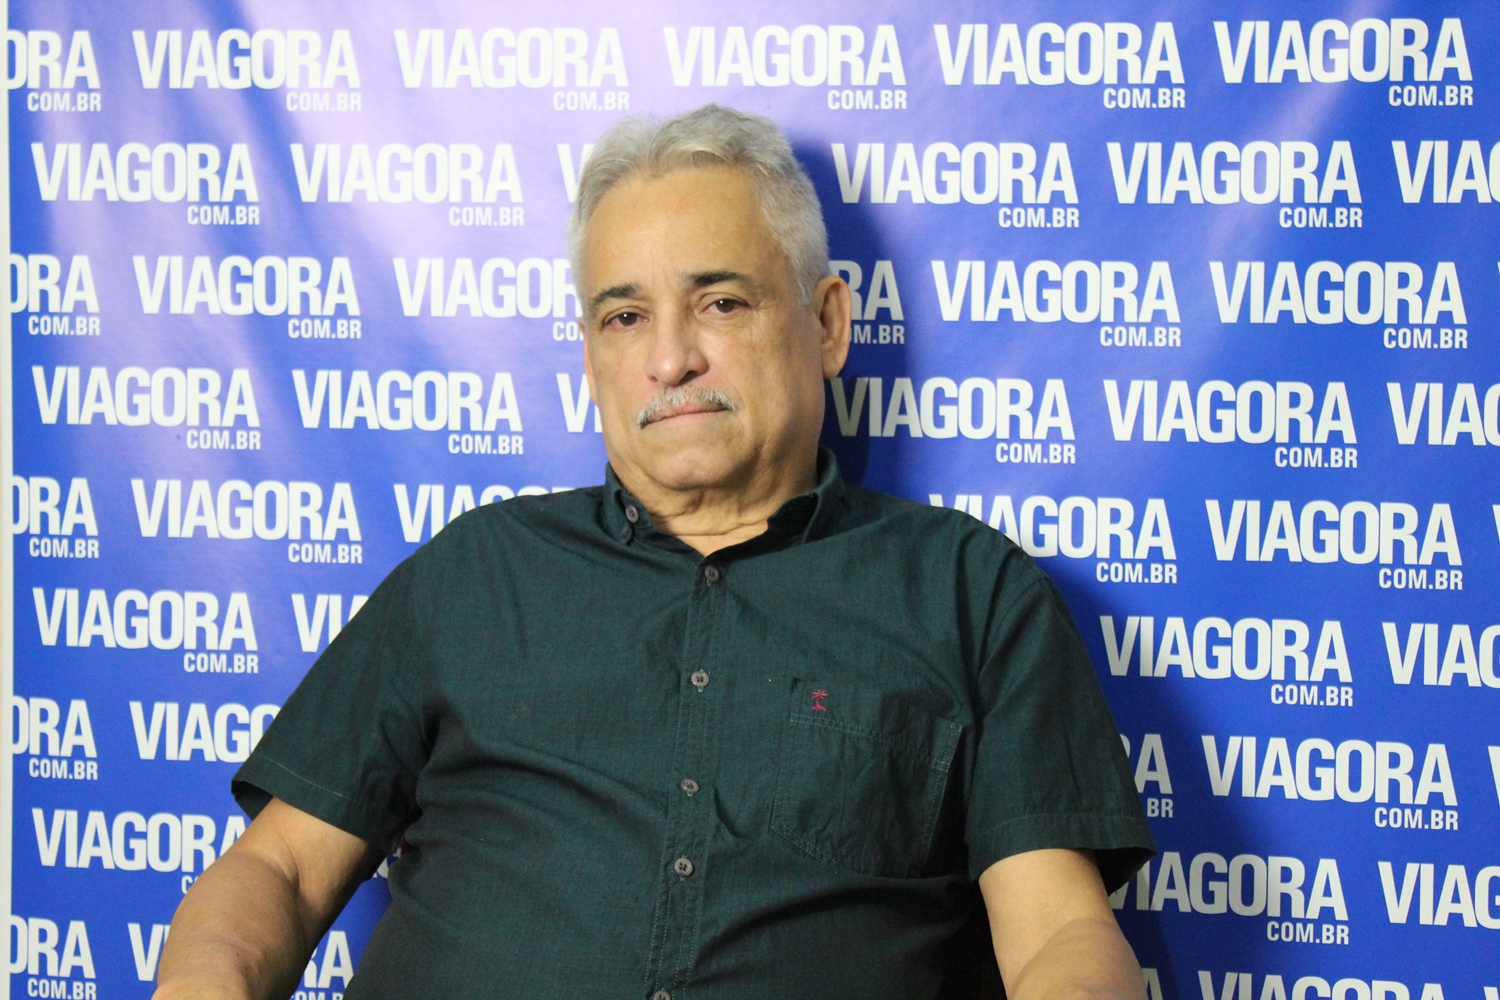 Ex-deputado Robert Rios em entrevista ao Viagora.